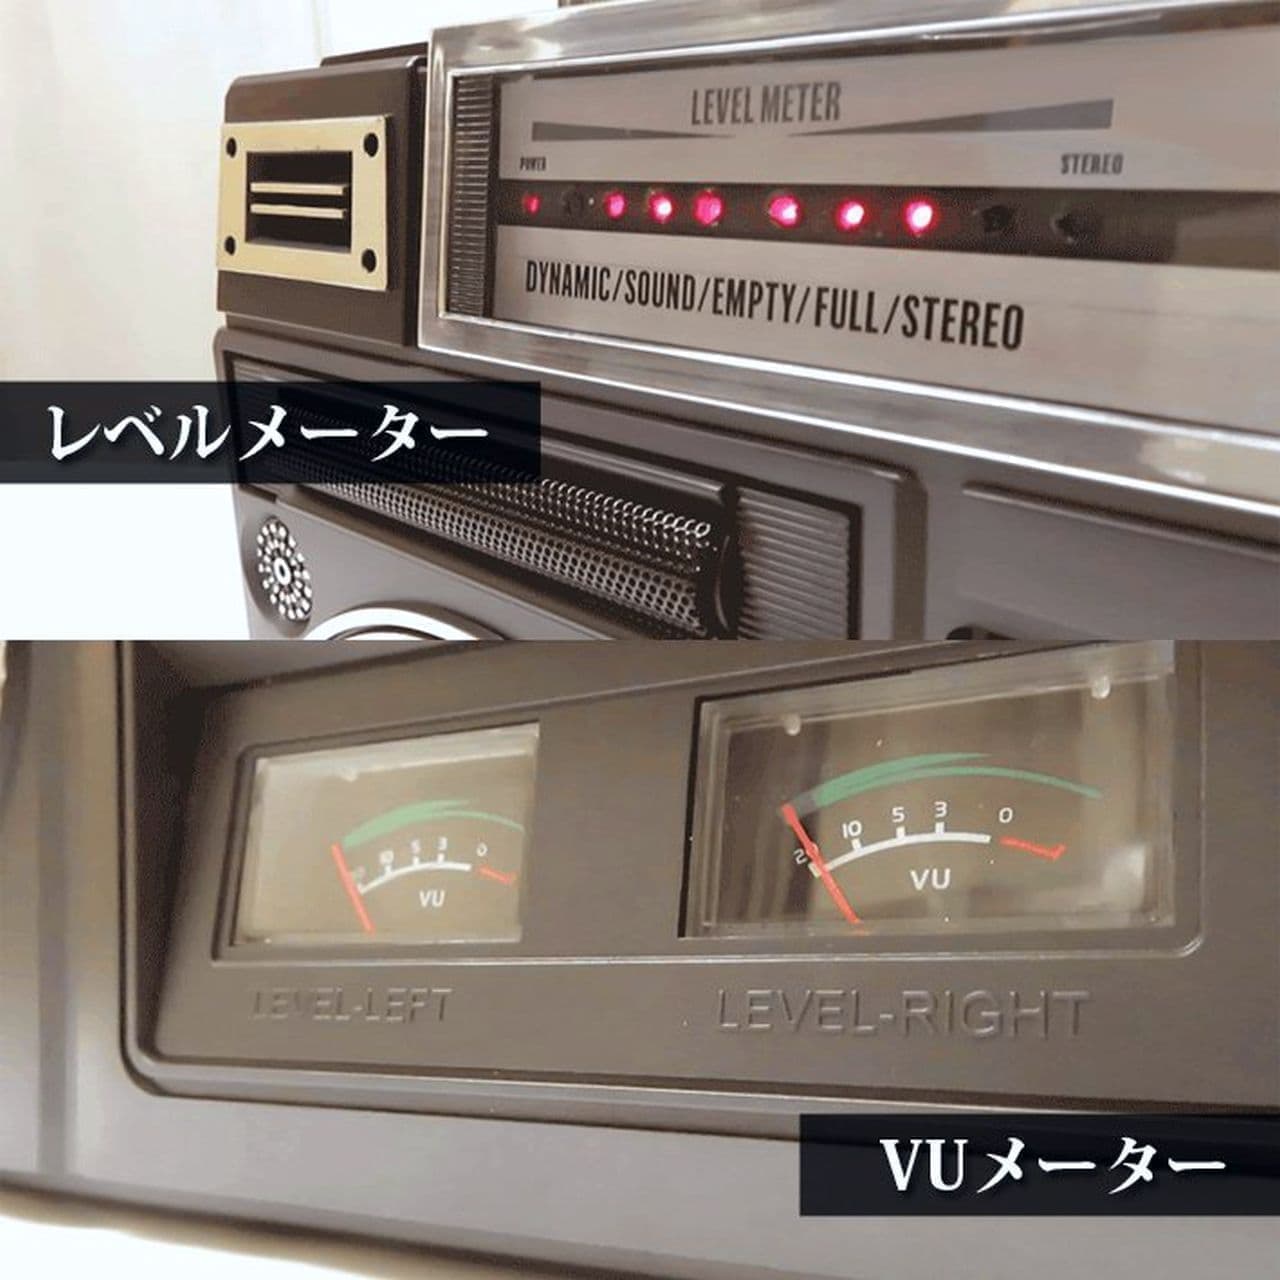 昭和のラジカセを再現したCICONIA「クラシカルステレオラジカセ TY-2111」一般販売開始 カセットテープを再生できます